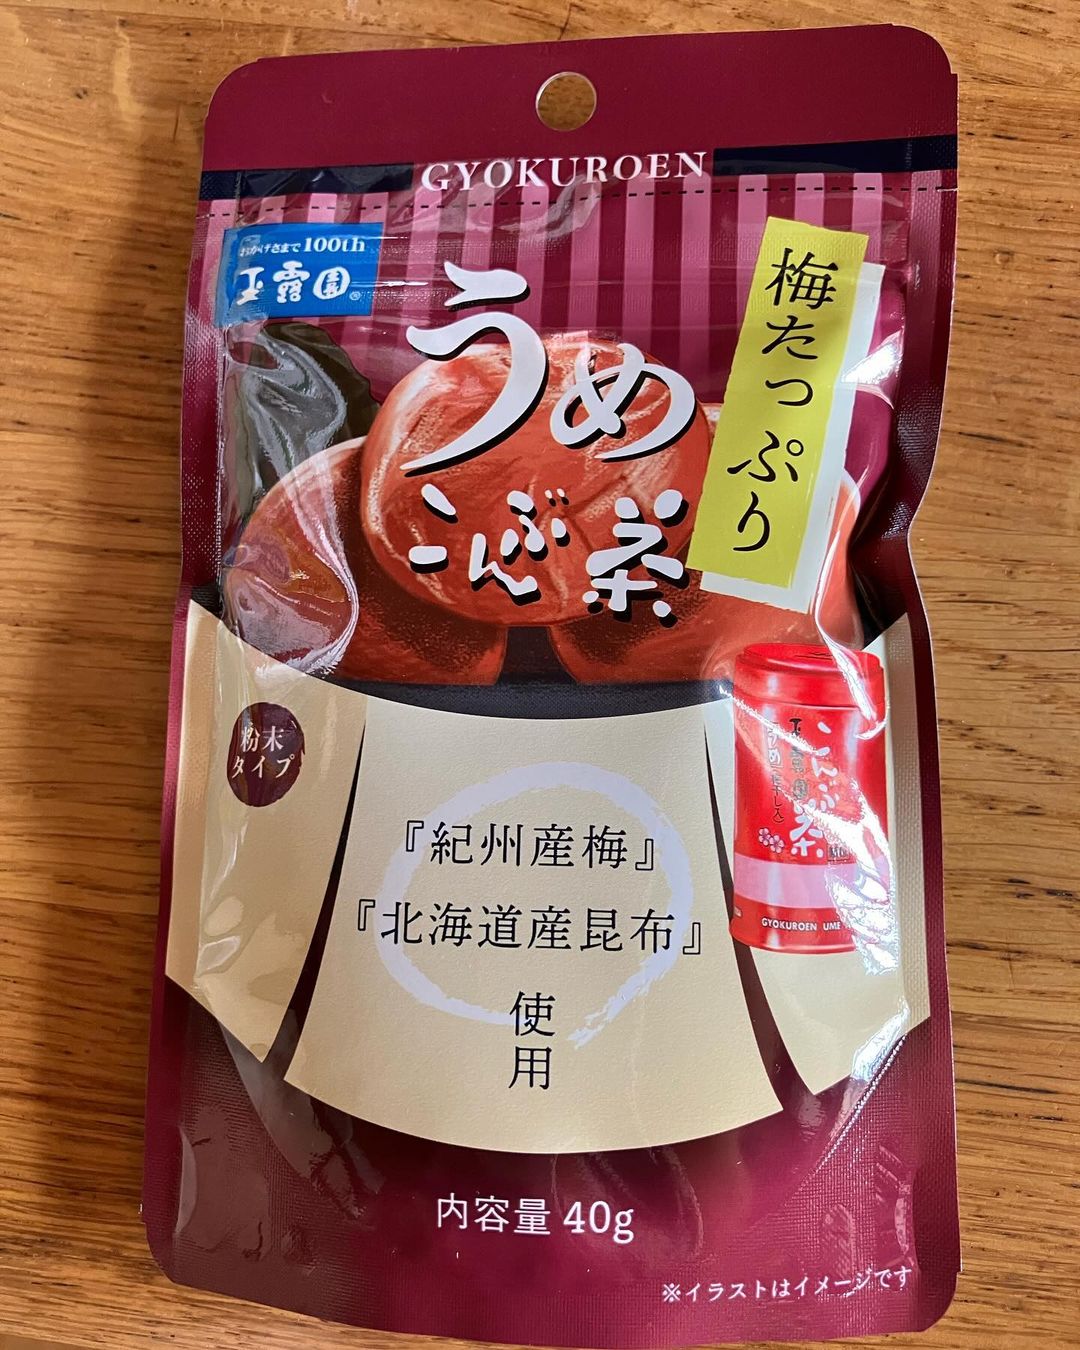 口コミ投稿：「元祖こんぶ茶」の玉露園さんの新商品『梅たっぷりうめこんぶ茶』をお試ししていま…